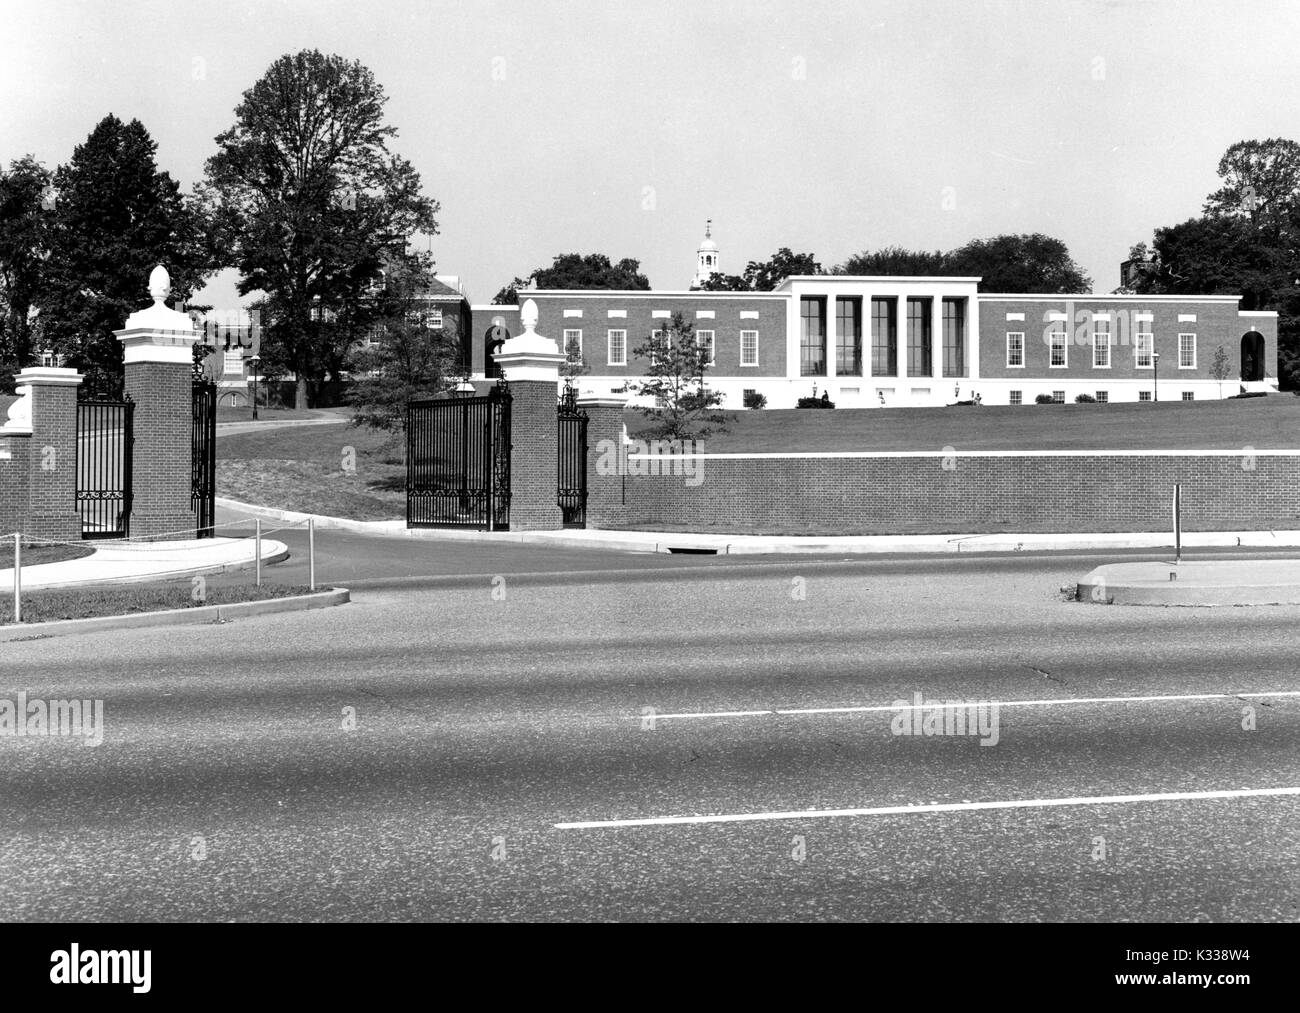 À partir de la rue Charles, l'entrée et Merrick Gateway menant à l'Université Johns Hopkins, avec la pelouse connu comme le 'Beach' et le Milton S Eisenhower Library en haut de la colline, ses plusieurs niveaux s'étendant sous terre, et Gilman Hall visible dans la distance, Baltimore, Marland, 1965. Banque D'Images